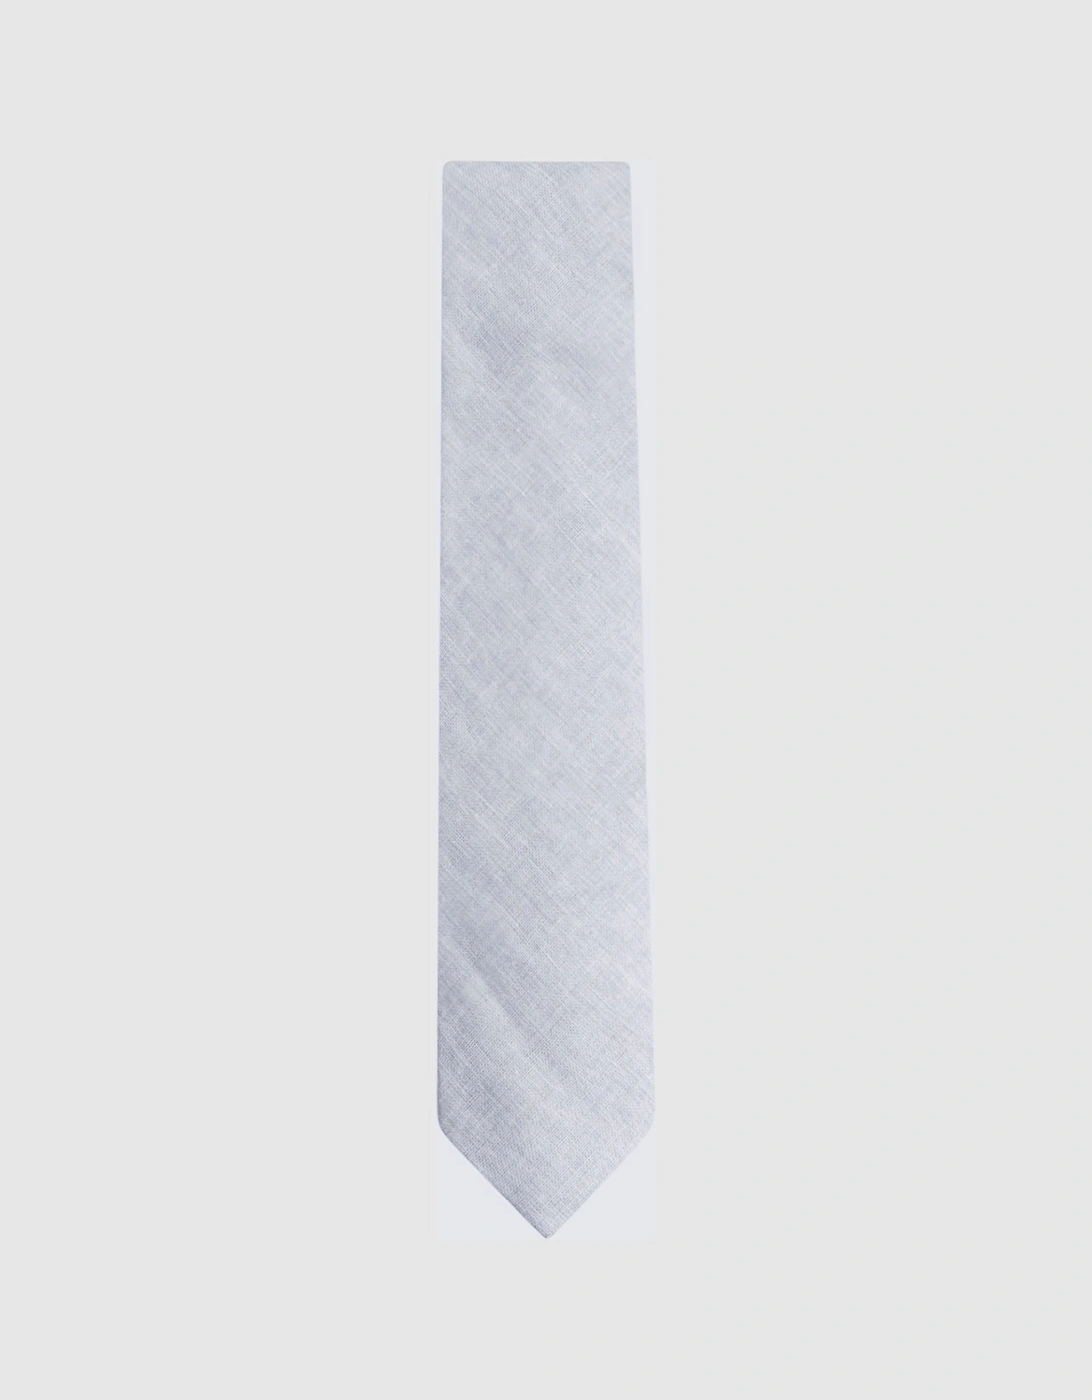 Linen Tie, 2 of 1